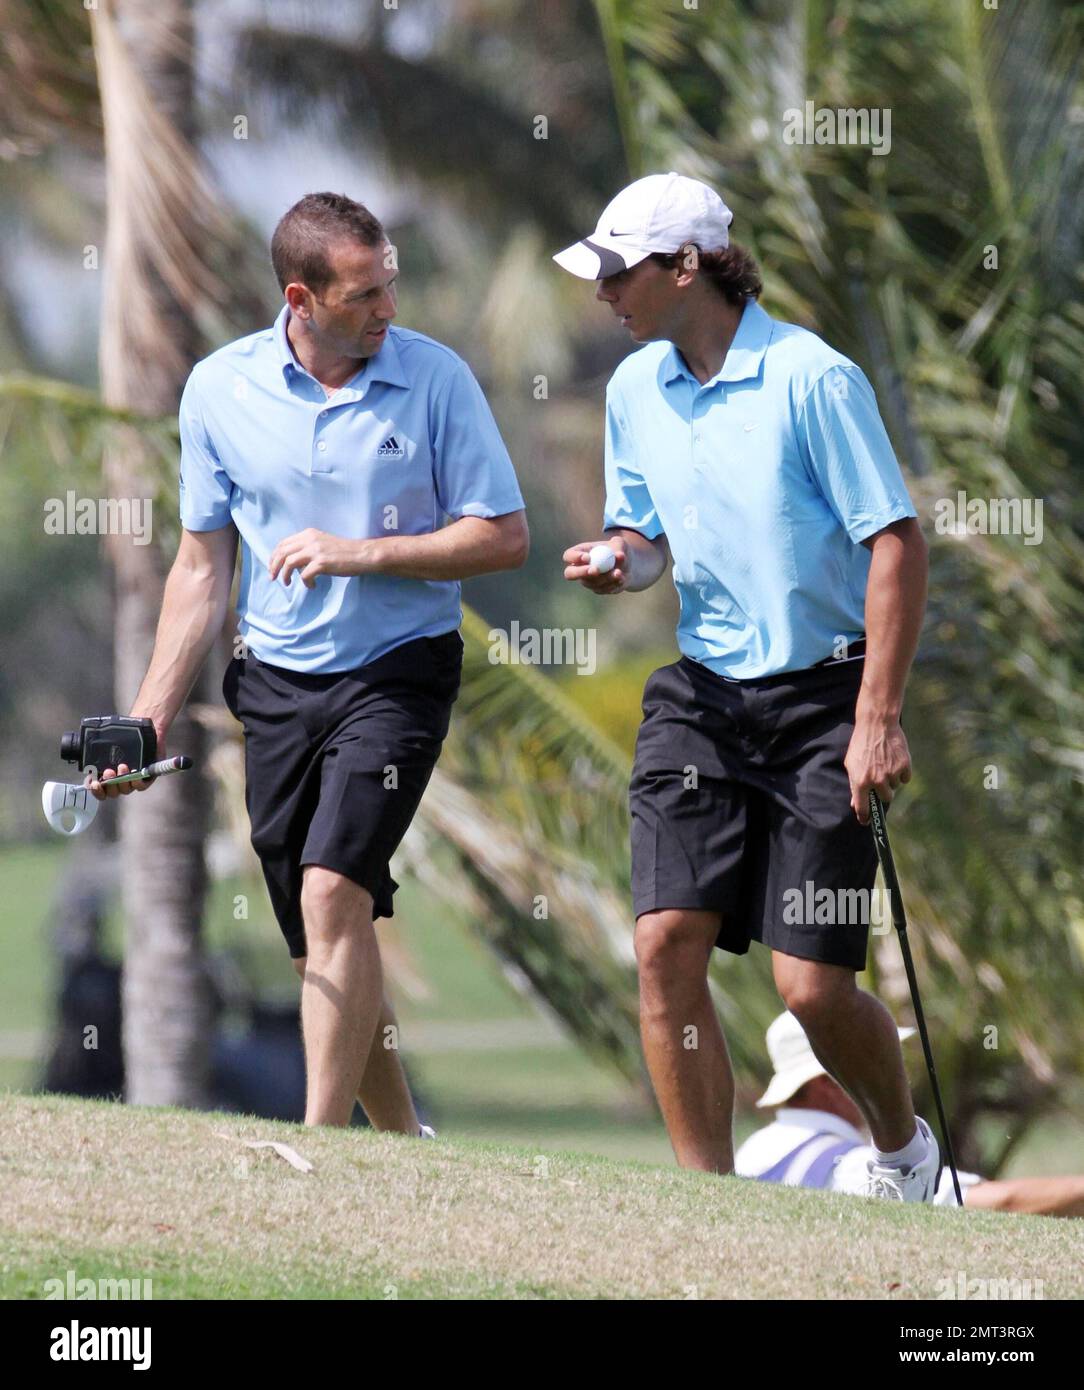 ESCLUSIVO!! L'asso del tennis Rafael Nadal gioca una piacevole partita di  golf con l'amico Silvio Garcia dopo aver fatto il giro ai quarti di finale  del Sony Ericsson Open. Nadal, che ieri